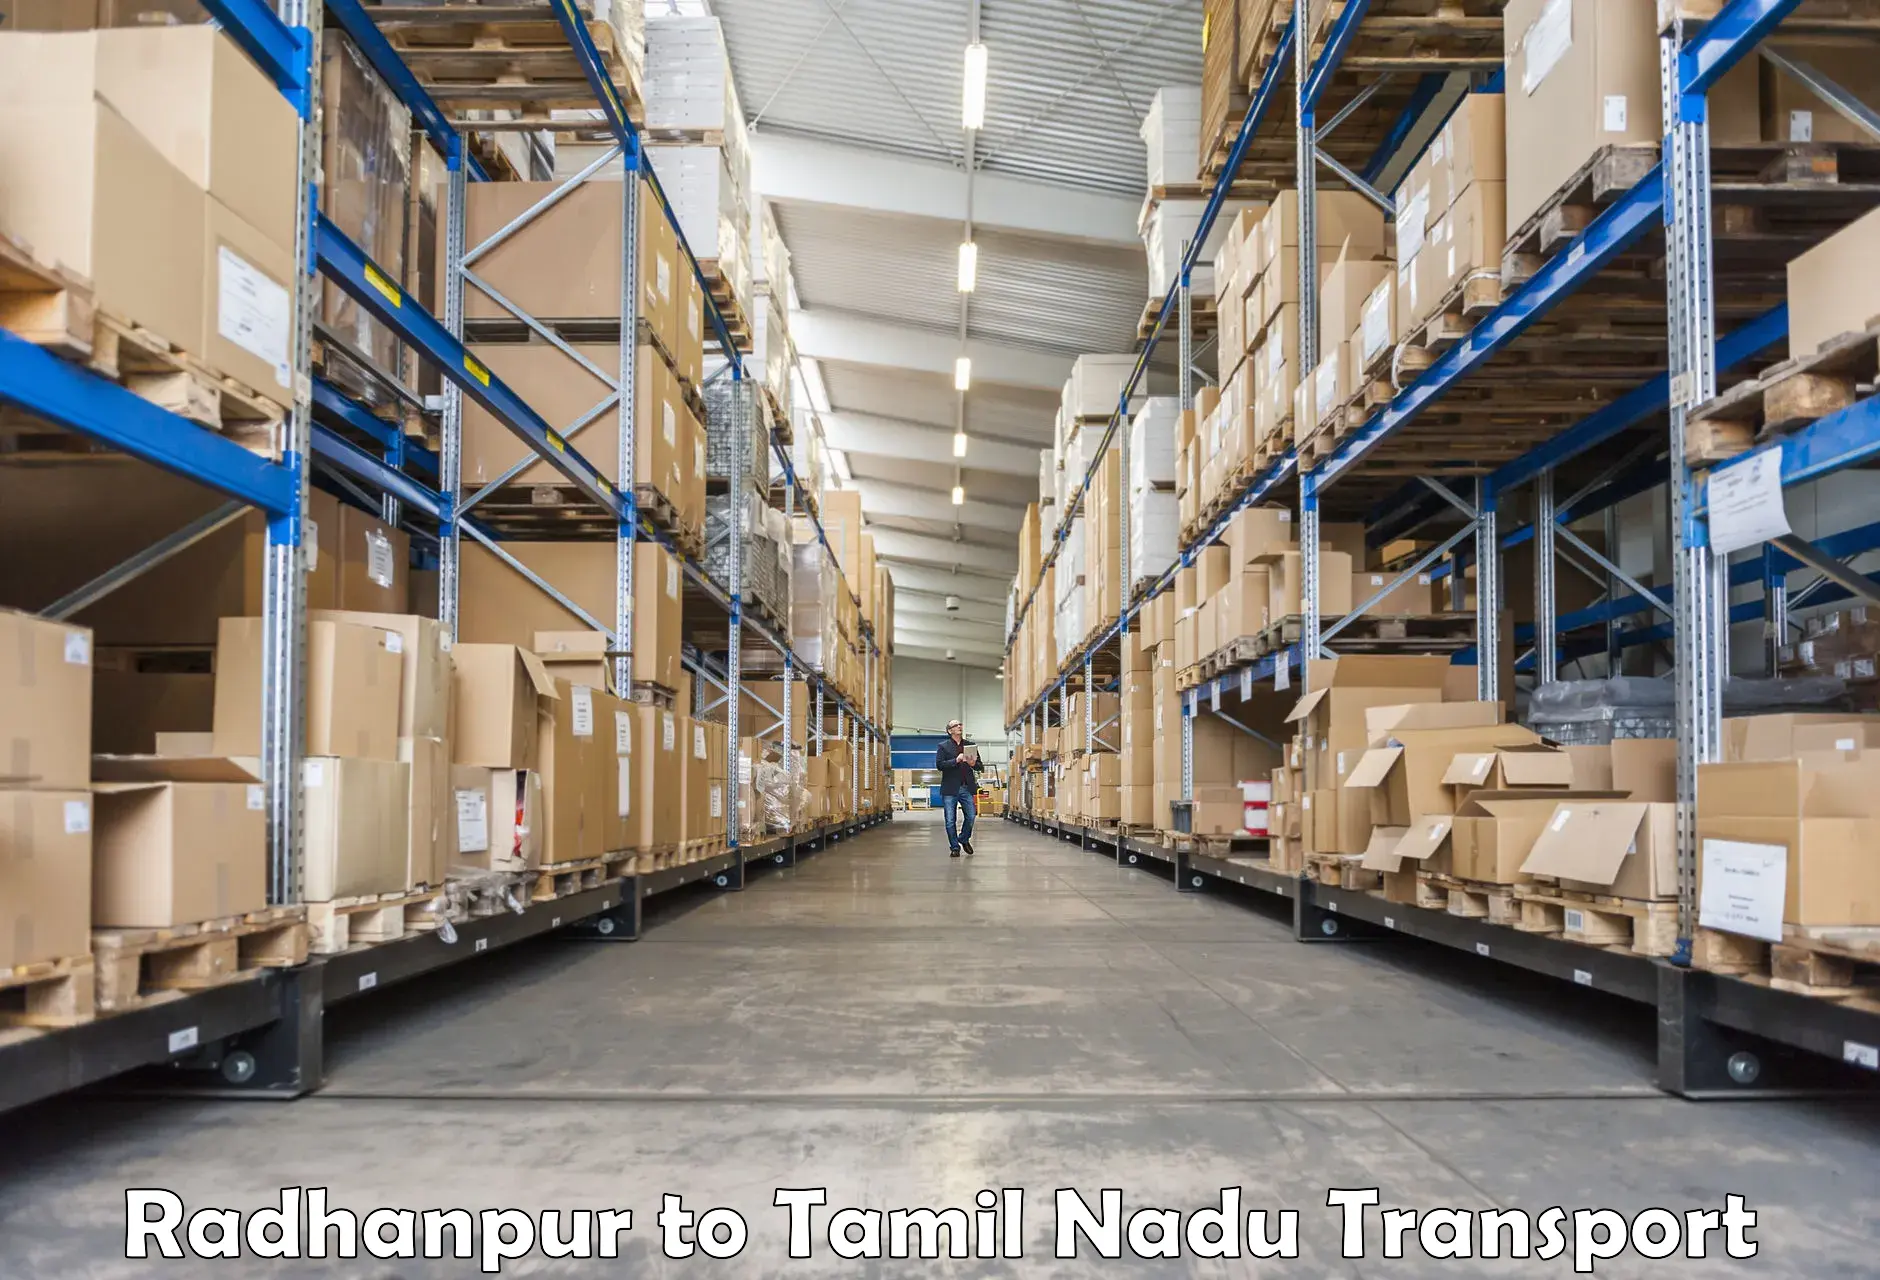 Shipping partner Radhanpur to IIIT Tiruchirappalli